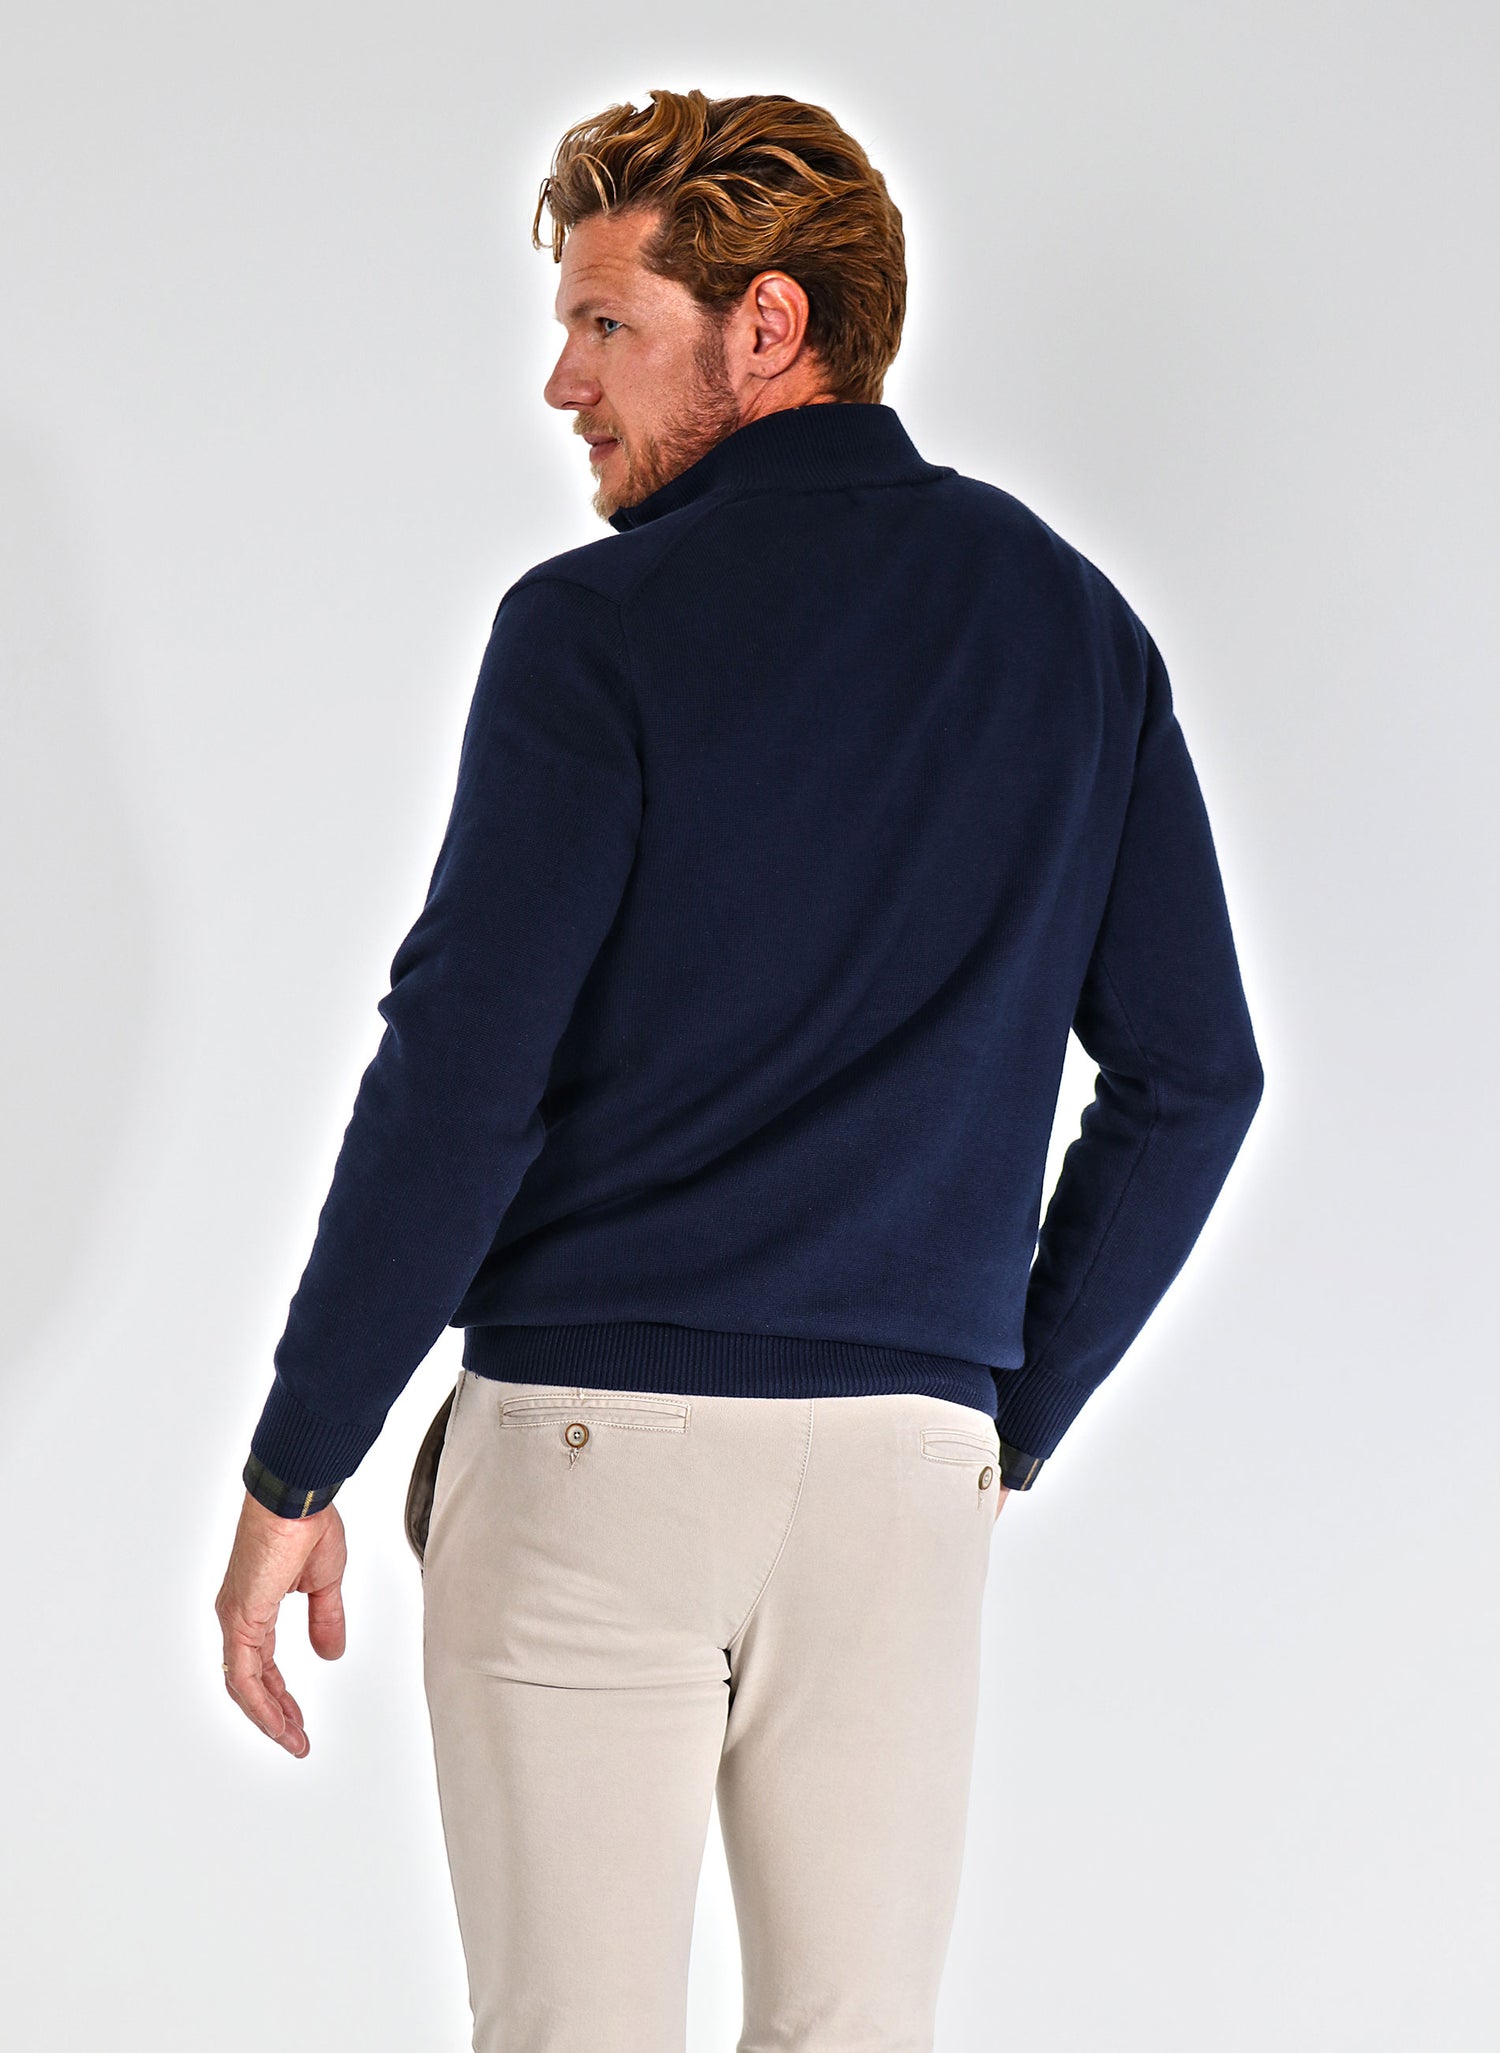 Men's Navy Blue Zipper Sweater